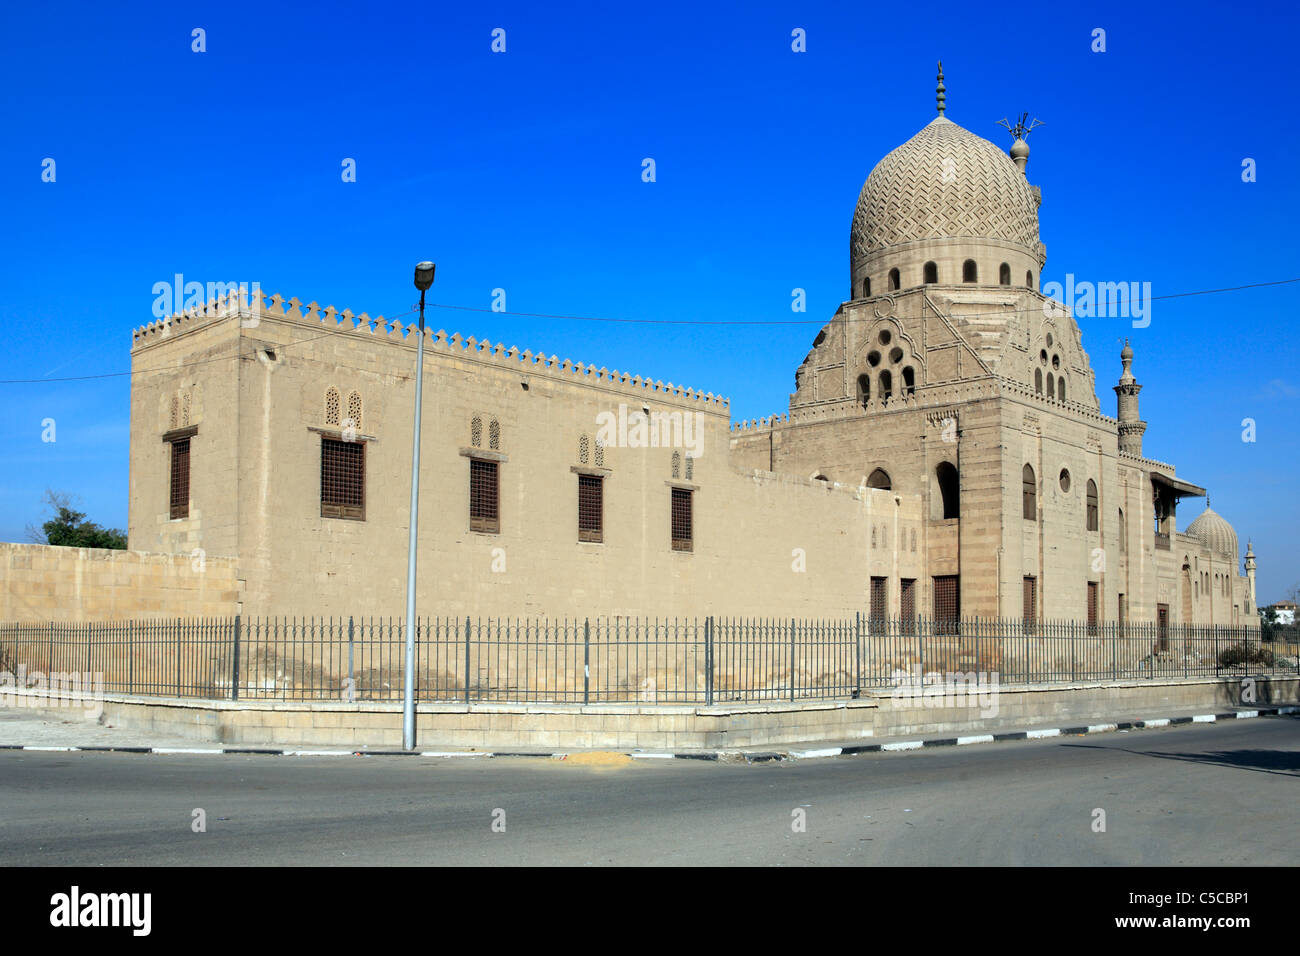 Amir Qurqumas mausoleum (1507), Cairo, Egypt Stock Photo